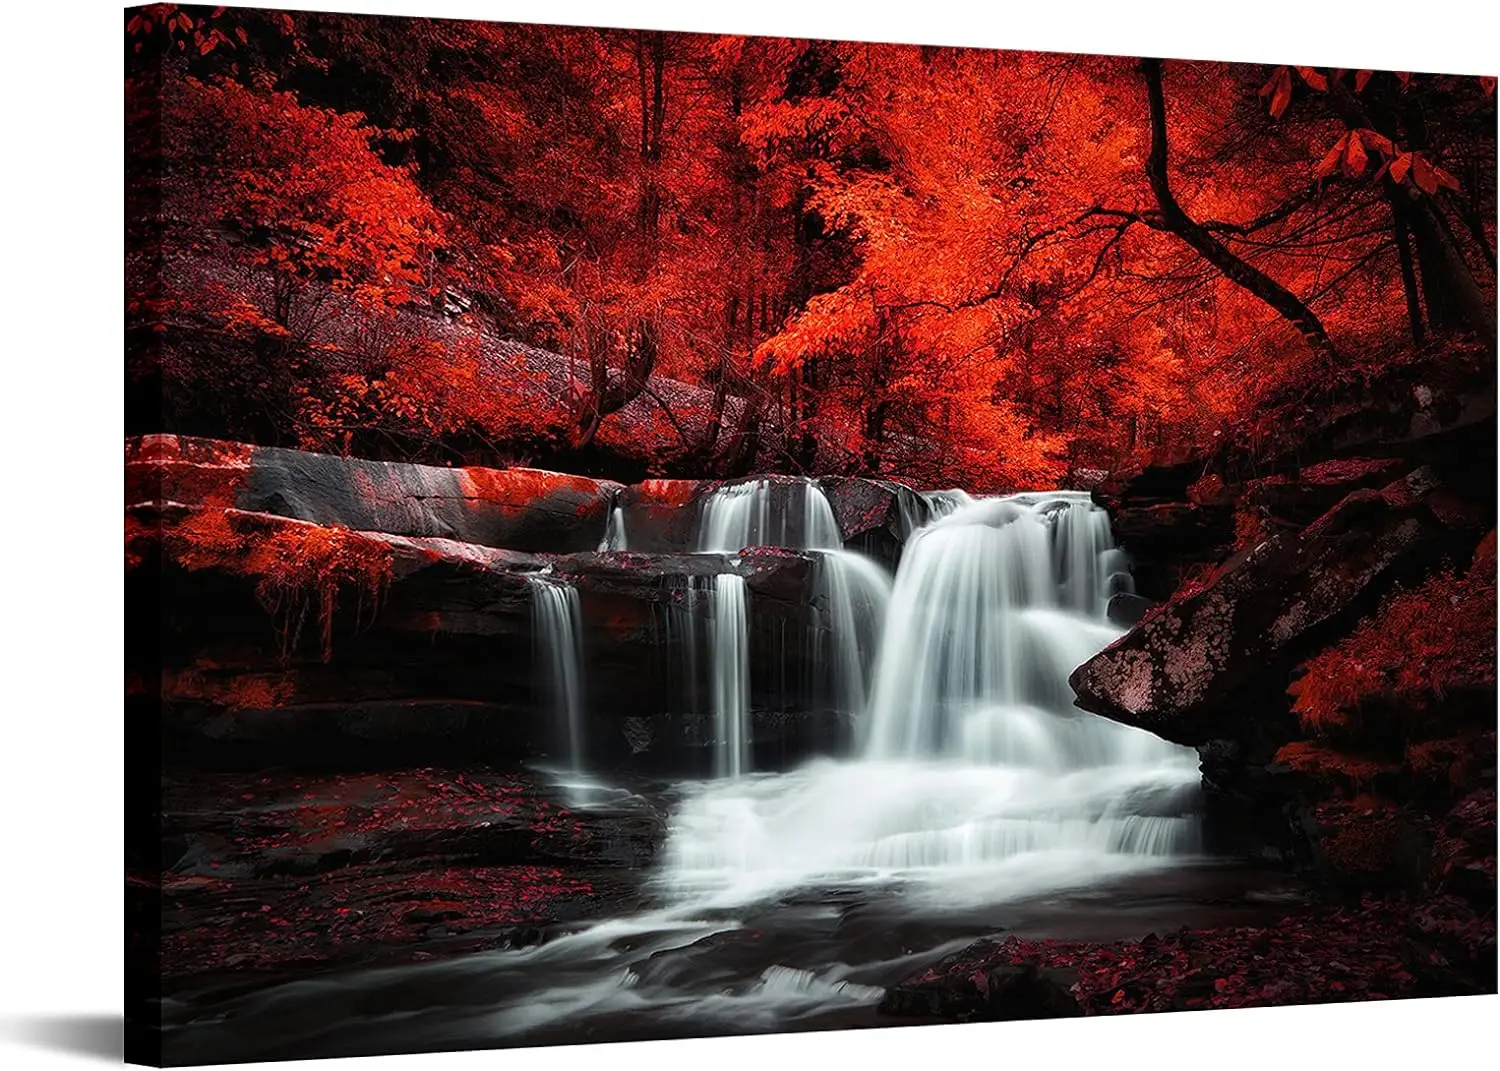 

Черное, белое и красное дерево, водопад, картина, холст, пейзаж, печать, искусство для гостиной, осень, красный лес, фотообои